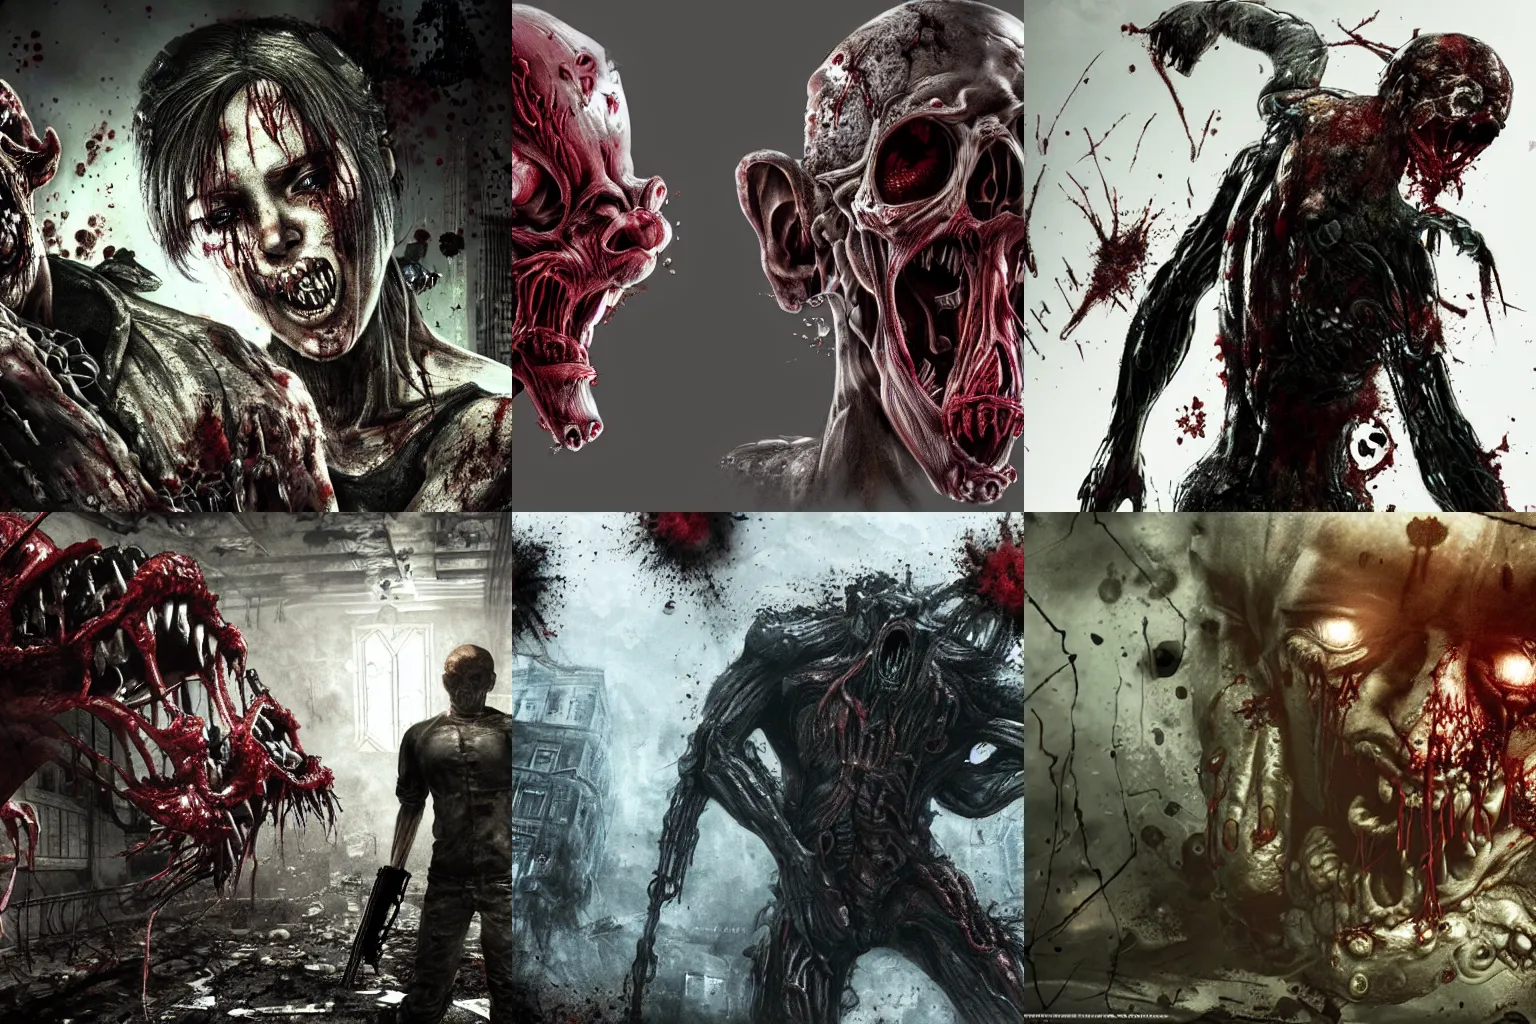 Image similar to Resident Evil virus concept art, nasty, vile, disgusting, rotten, putrid, highly detailed, horror, scary, terrifying, horrific, hd 4k